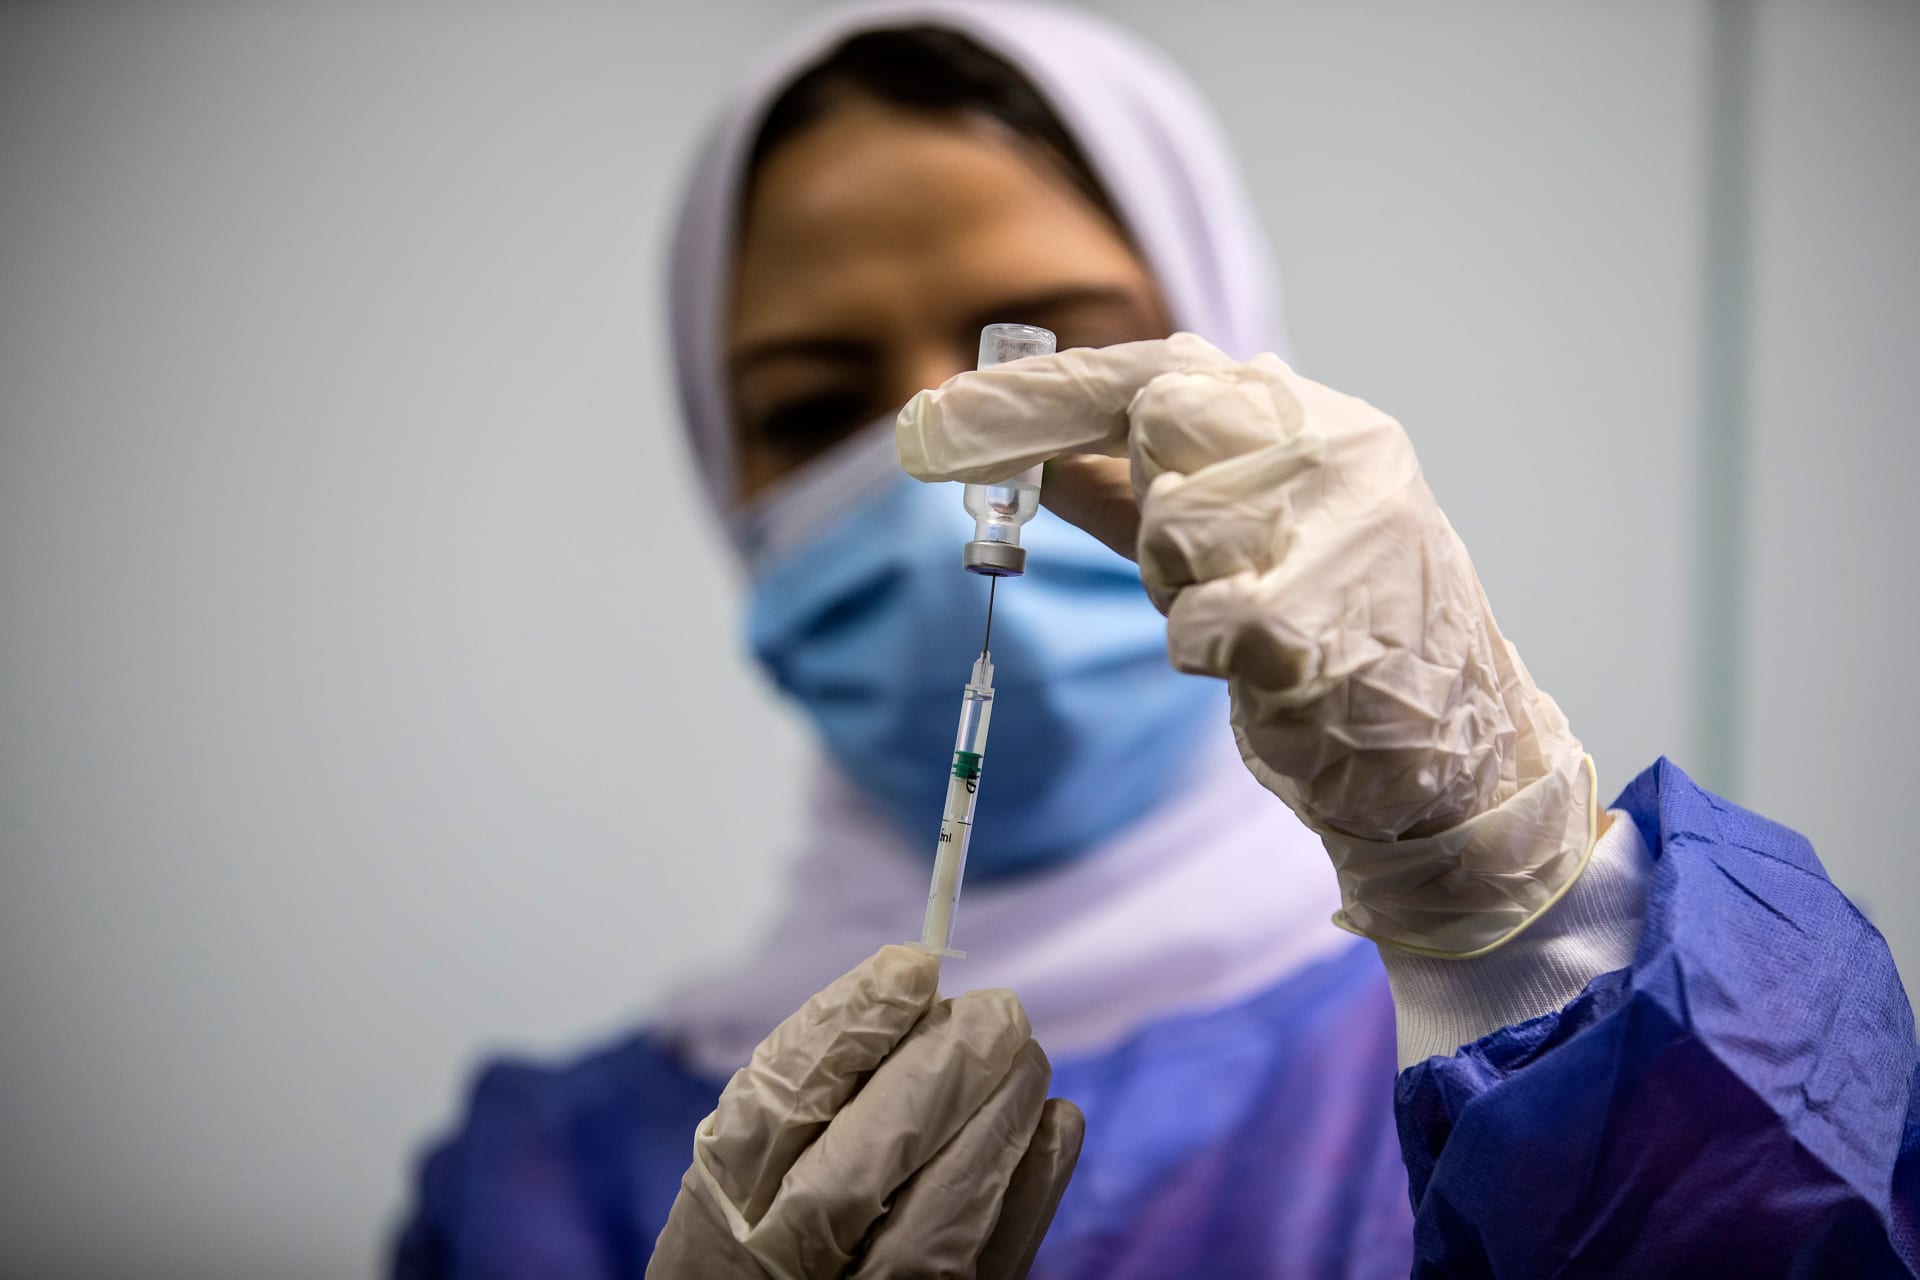 عاملة صحية مصرية تعطي جرعة من لقاح أوكسفورد أسترا زينيكا في 4 مارس 2021 في القاهرة في اليوم الأول من التطعيم في مصر.